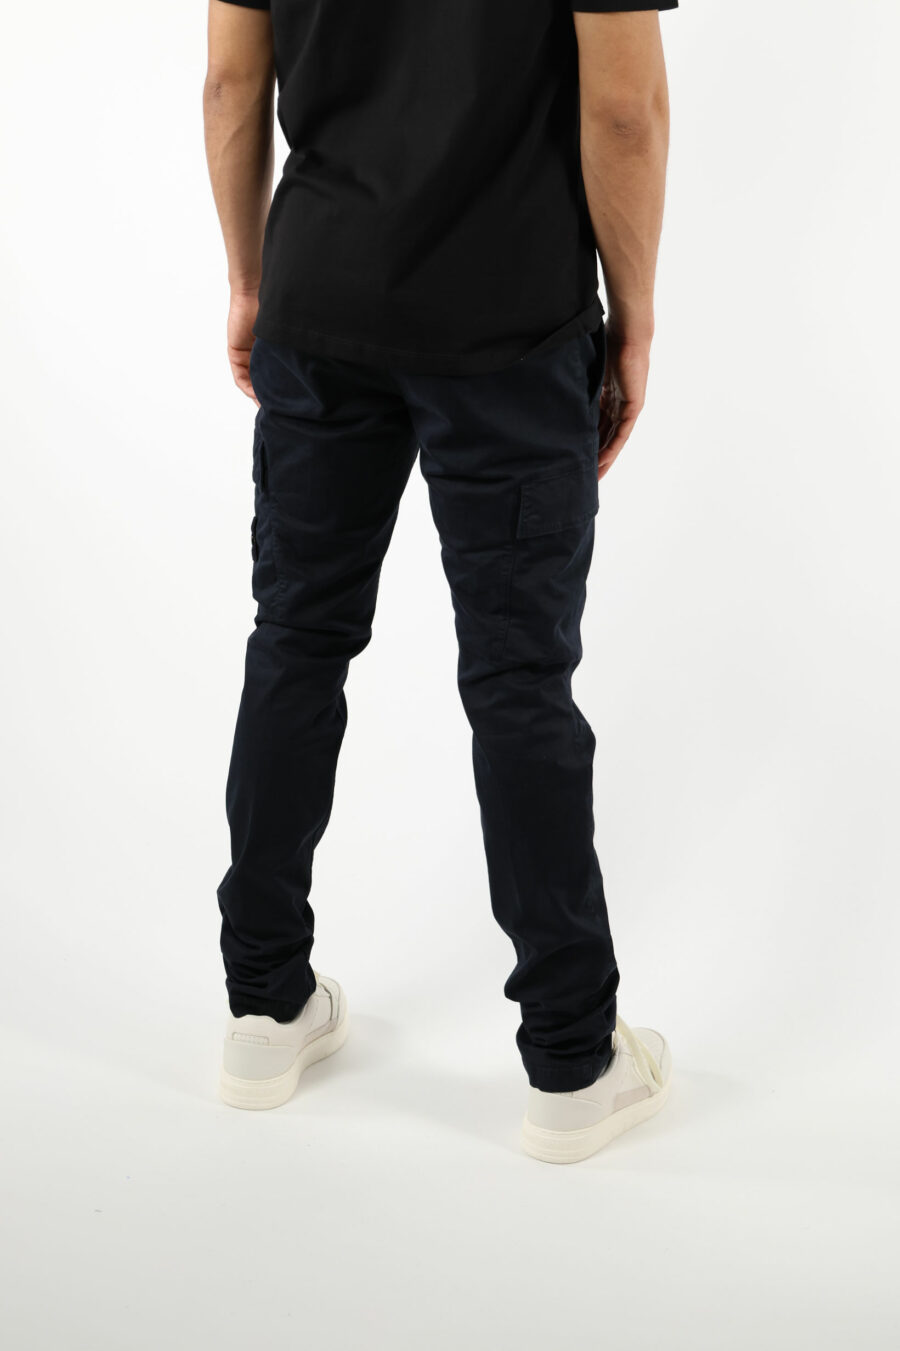 Pantalón azul oscuro "skinny" estilo cargo con logo parche brújula - 111406